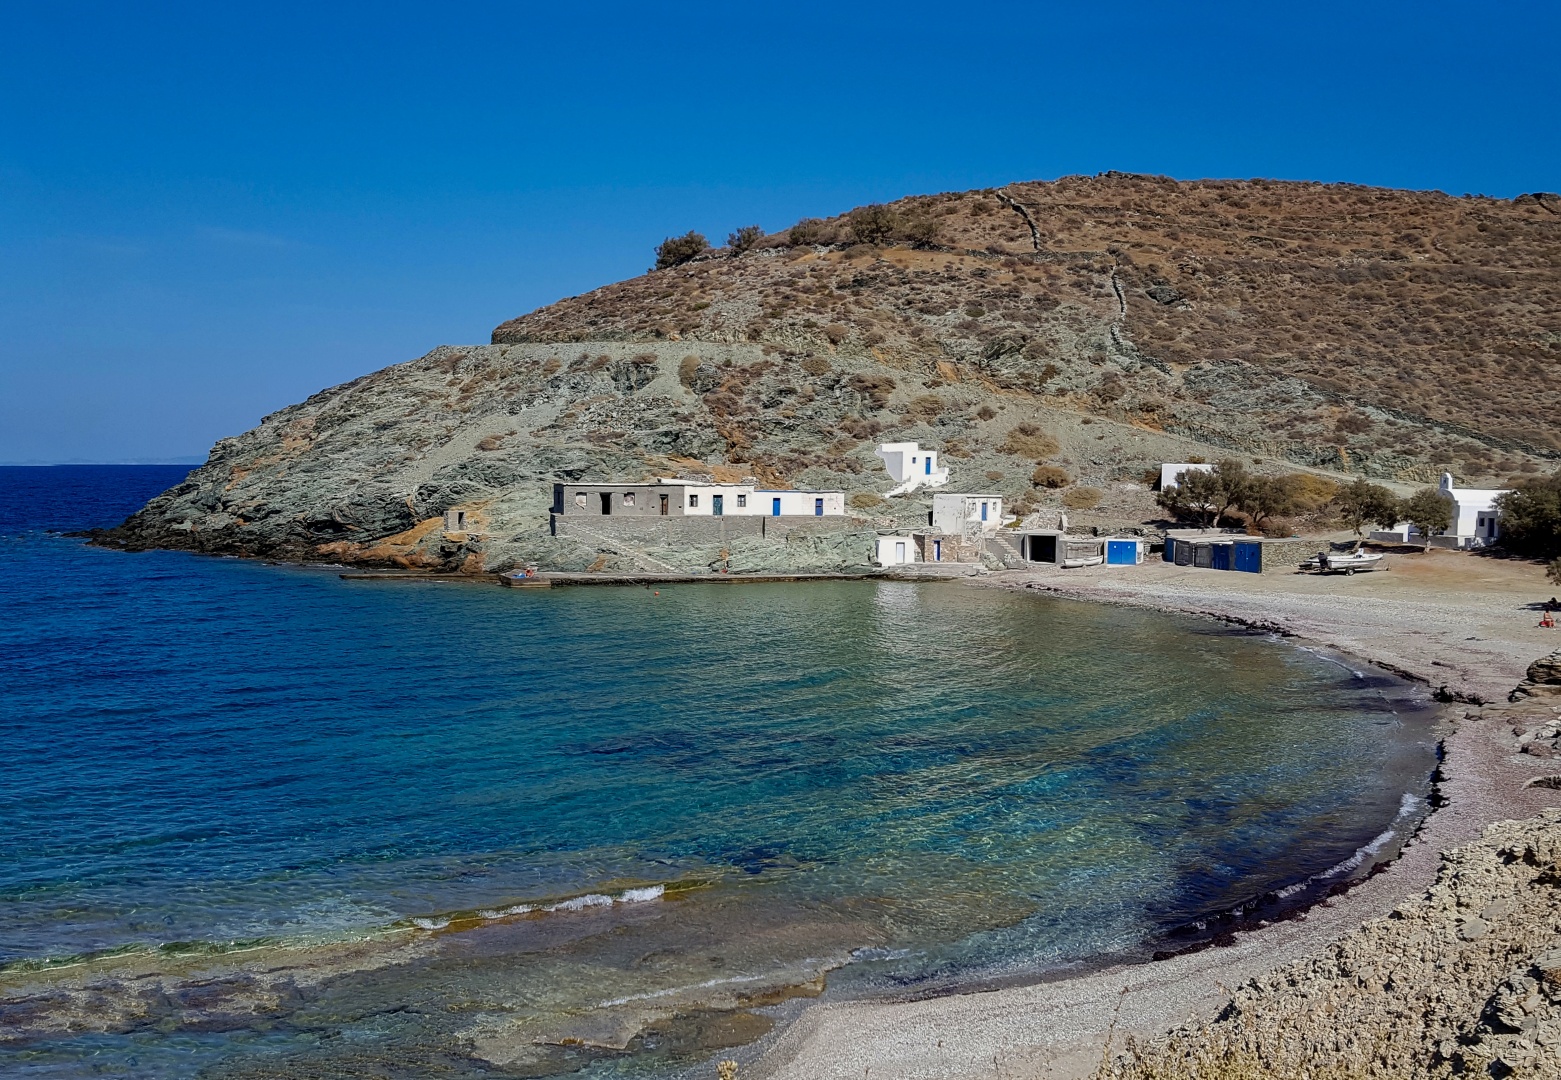 Agios Georgios'in fotoğrafı kısmen temiz temizlik seviyesi ile